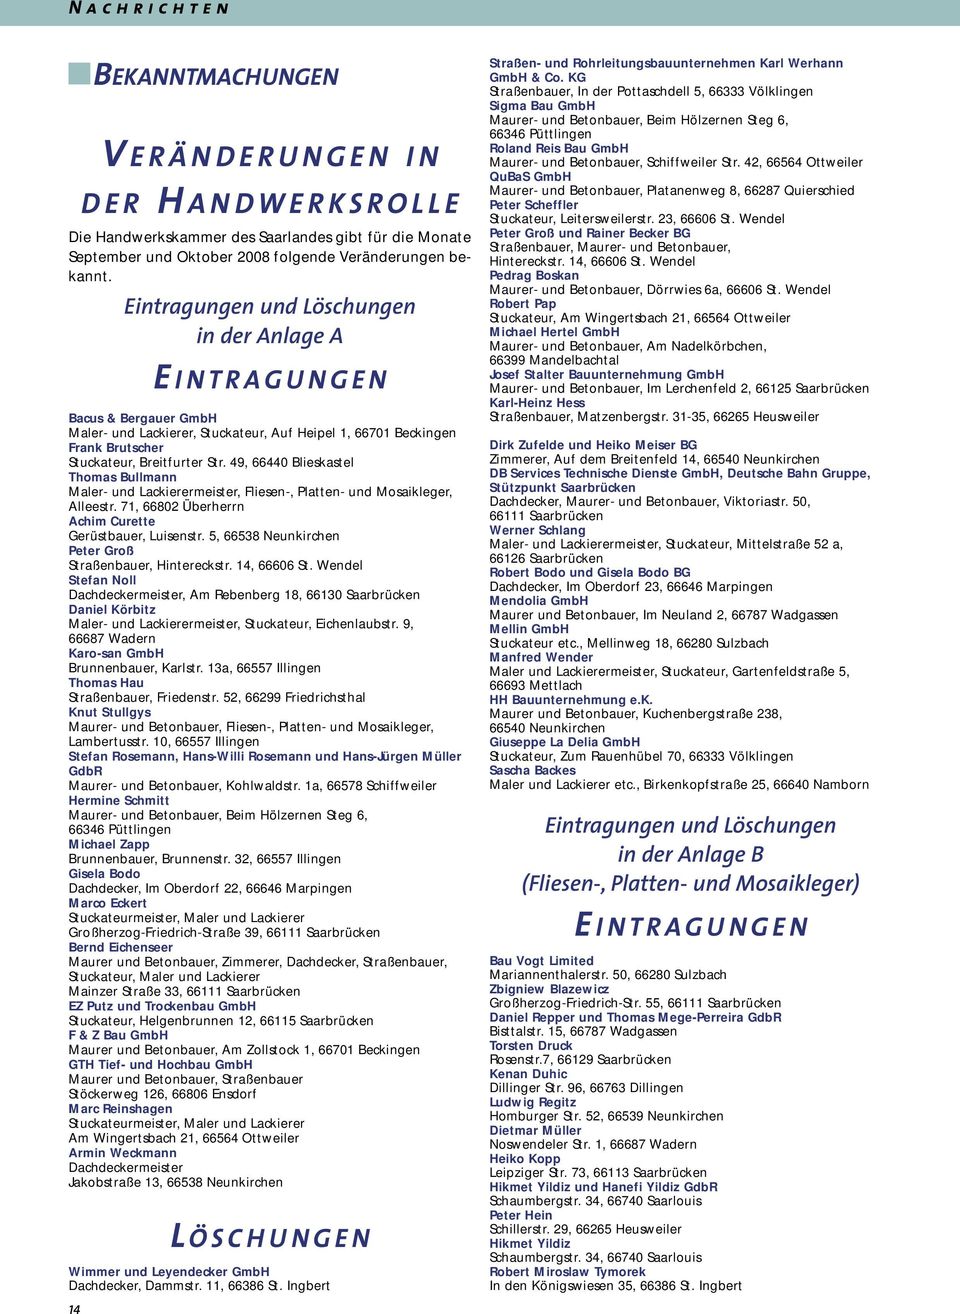 49, 66440 Blieskastel Thomas Bullmann Maler- und Lackierermeister, Fliesen-, Platten- und Mosaikleger, Alleestr. 71, 66802 Überherrn Achim Curette Gerüstbauer, Luisenstr.